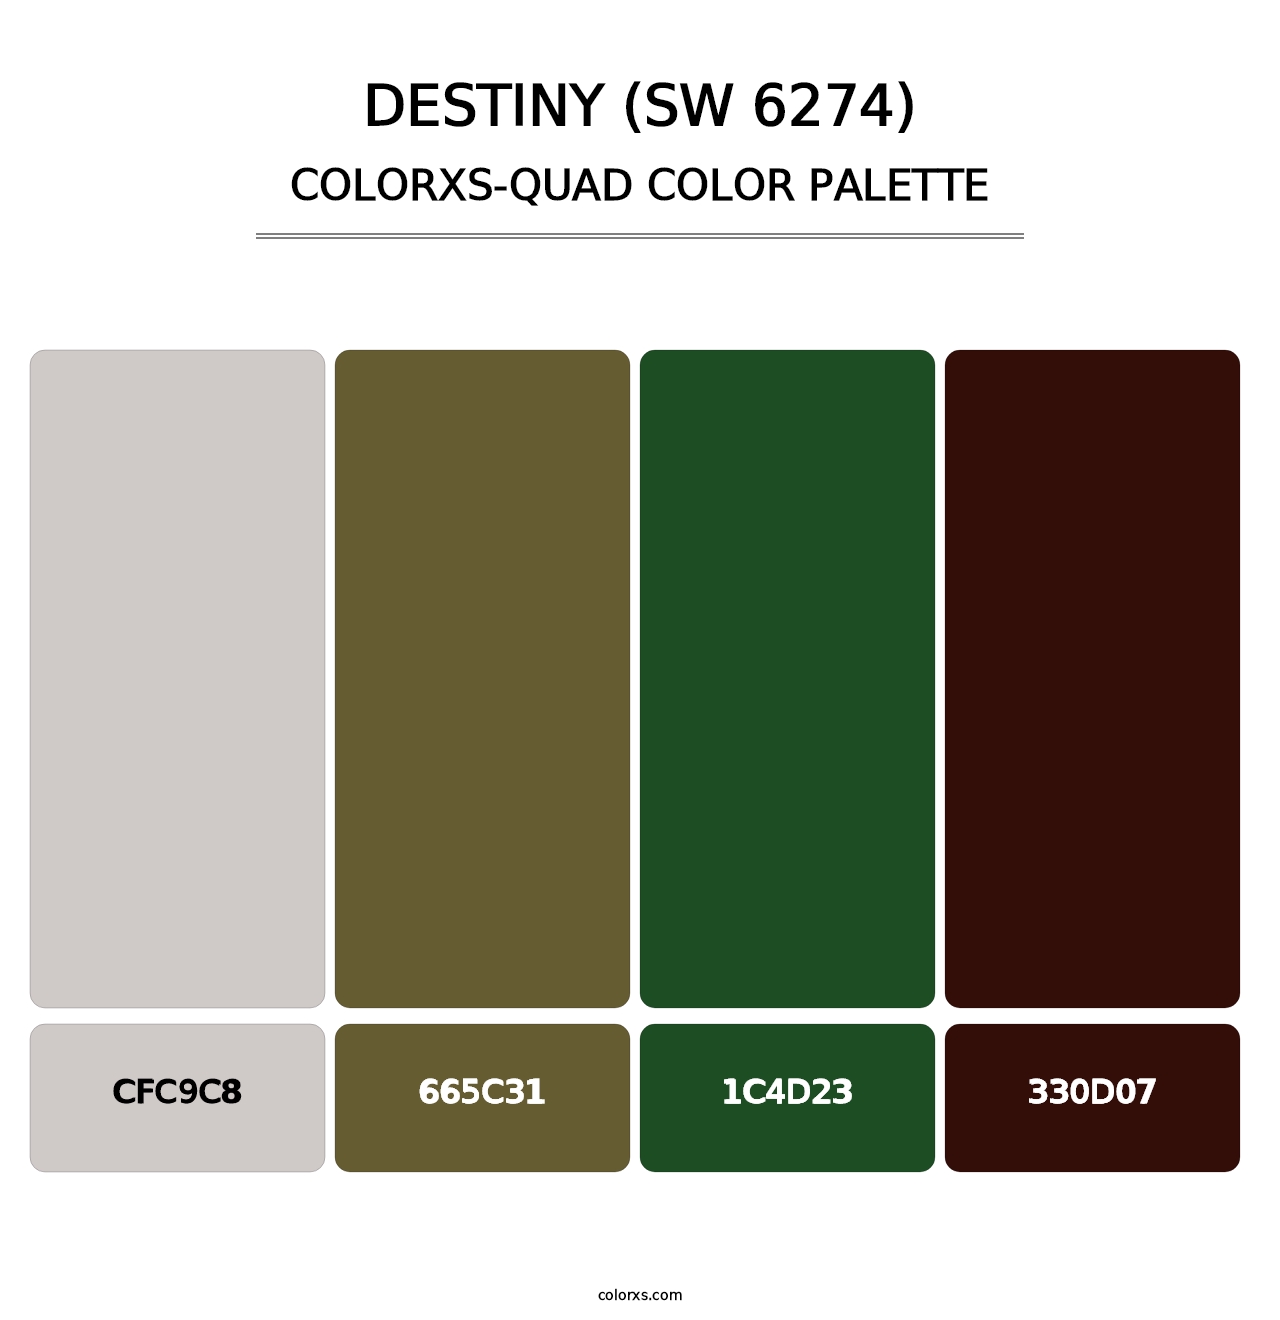 Destiny (SW 6274) - Colorxs Quad Palette